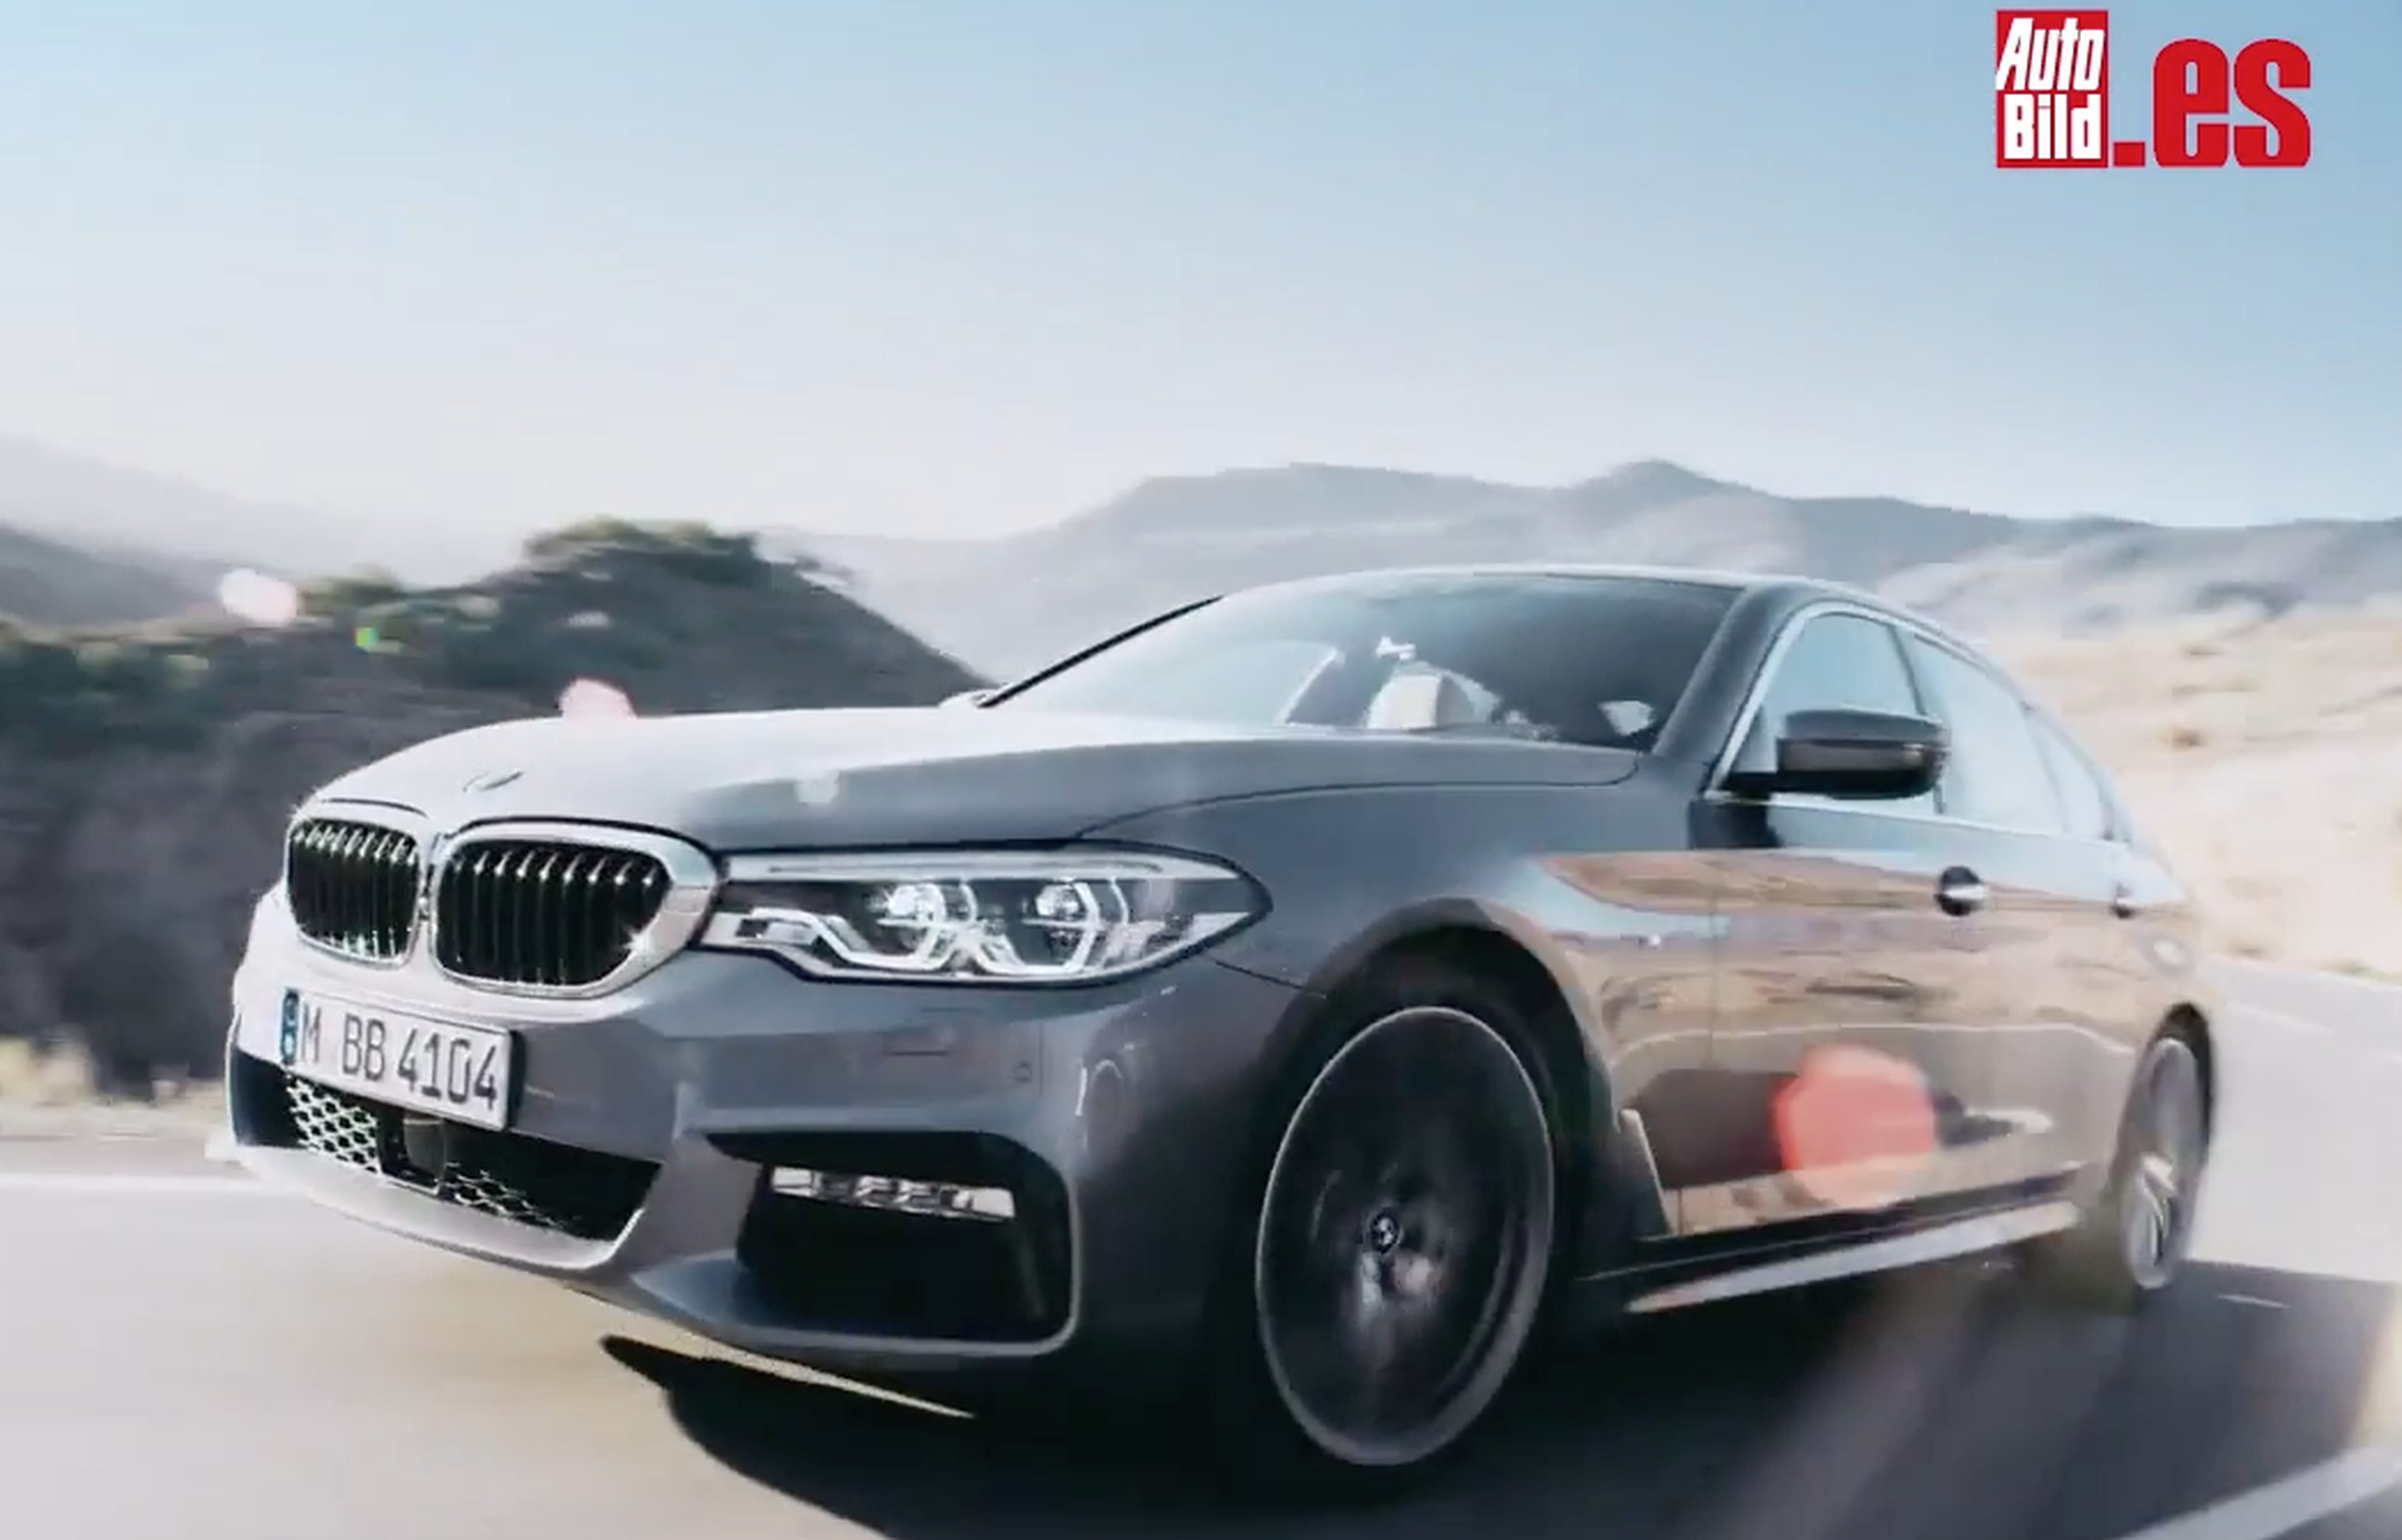 VÍDEO: Mira al BMW Serie 5 2017 en movimiento, ¿mola o no?